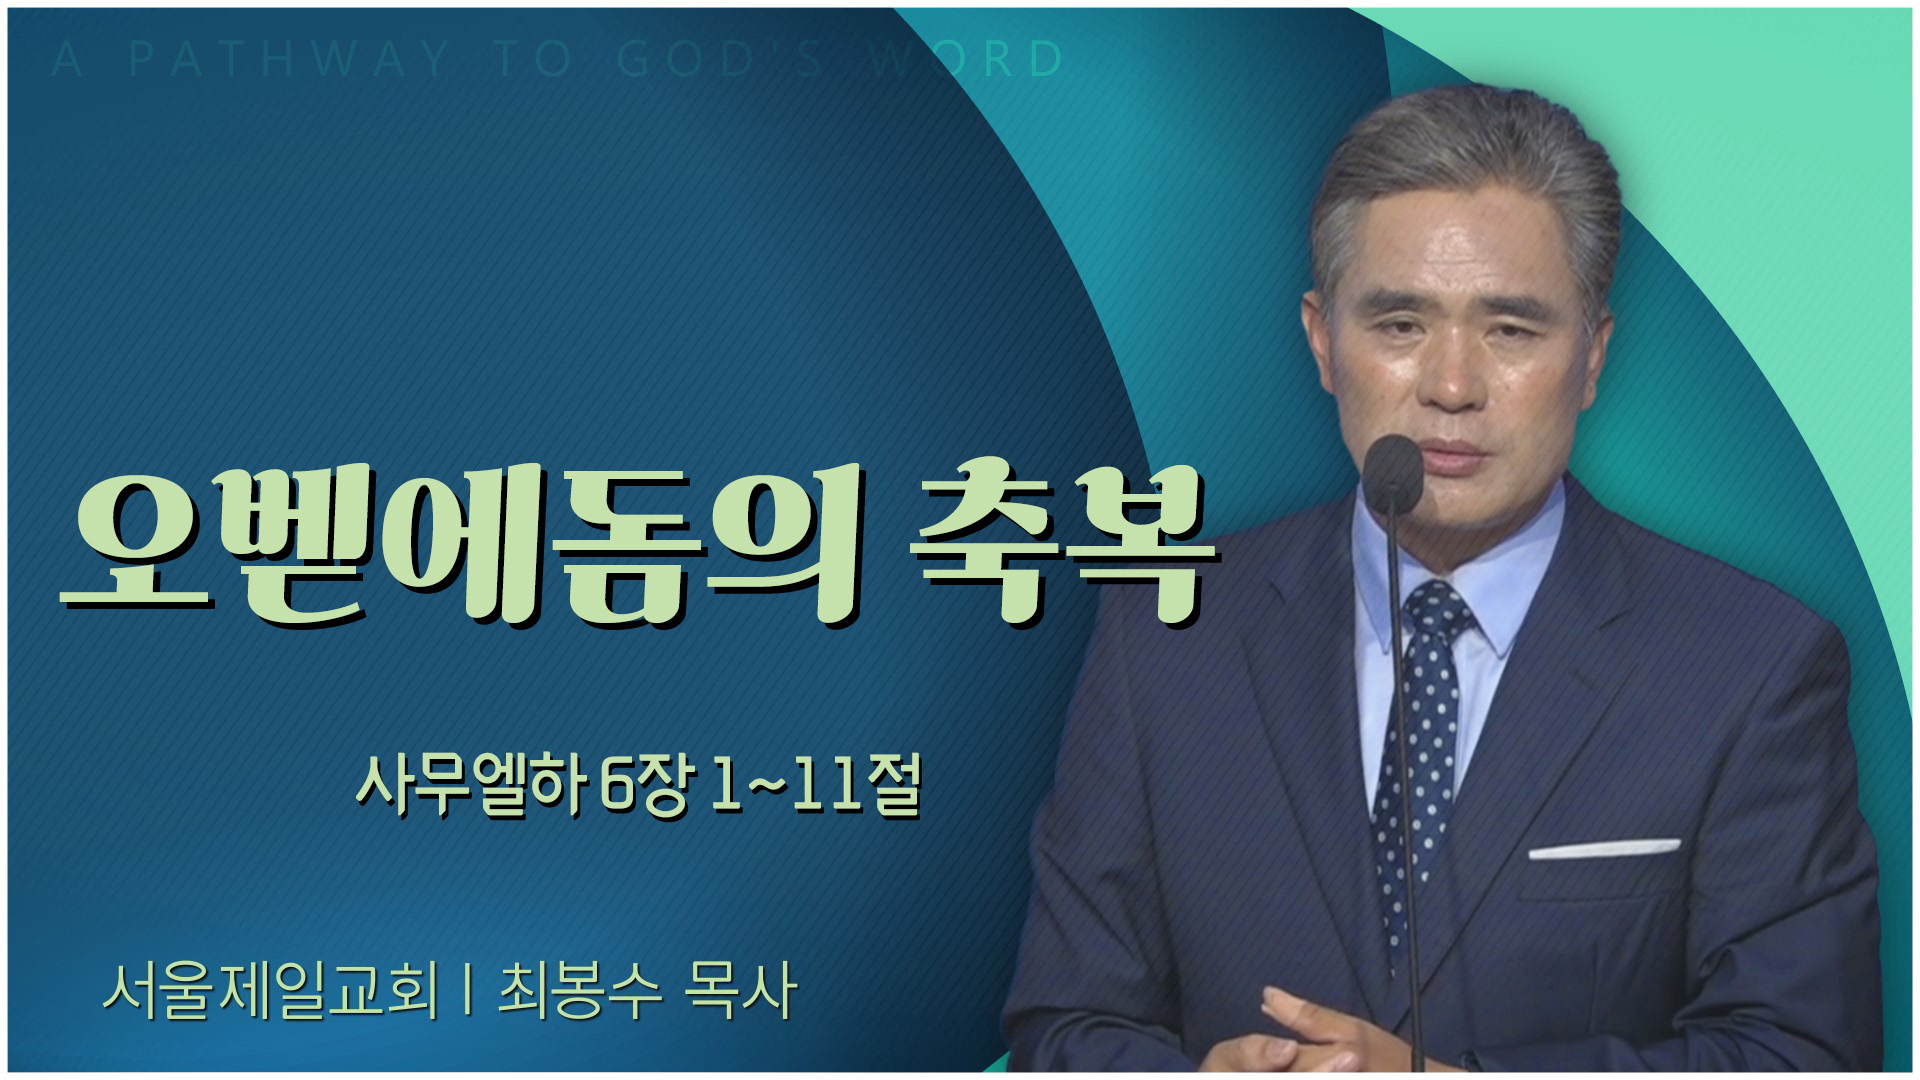 오벧에돔의 축복┃서울제일교회 최봉수 목사	